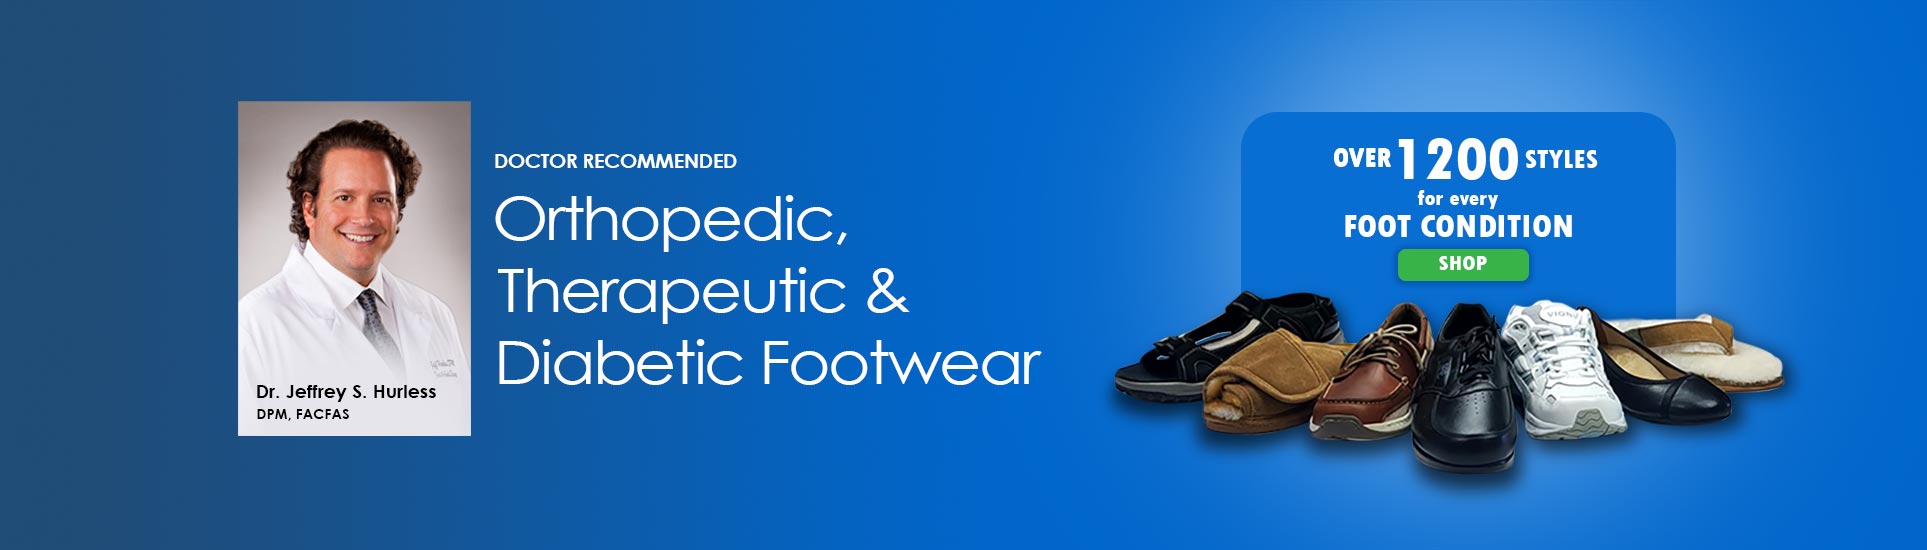 Orthopedic, Therapeutic & Diabetic Footwear healthyfeet